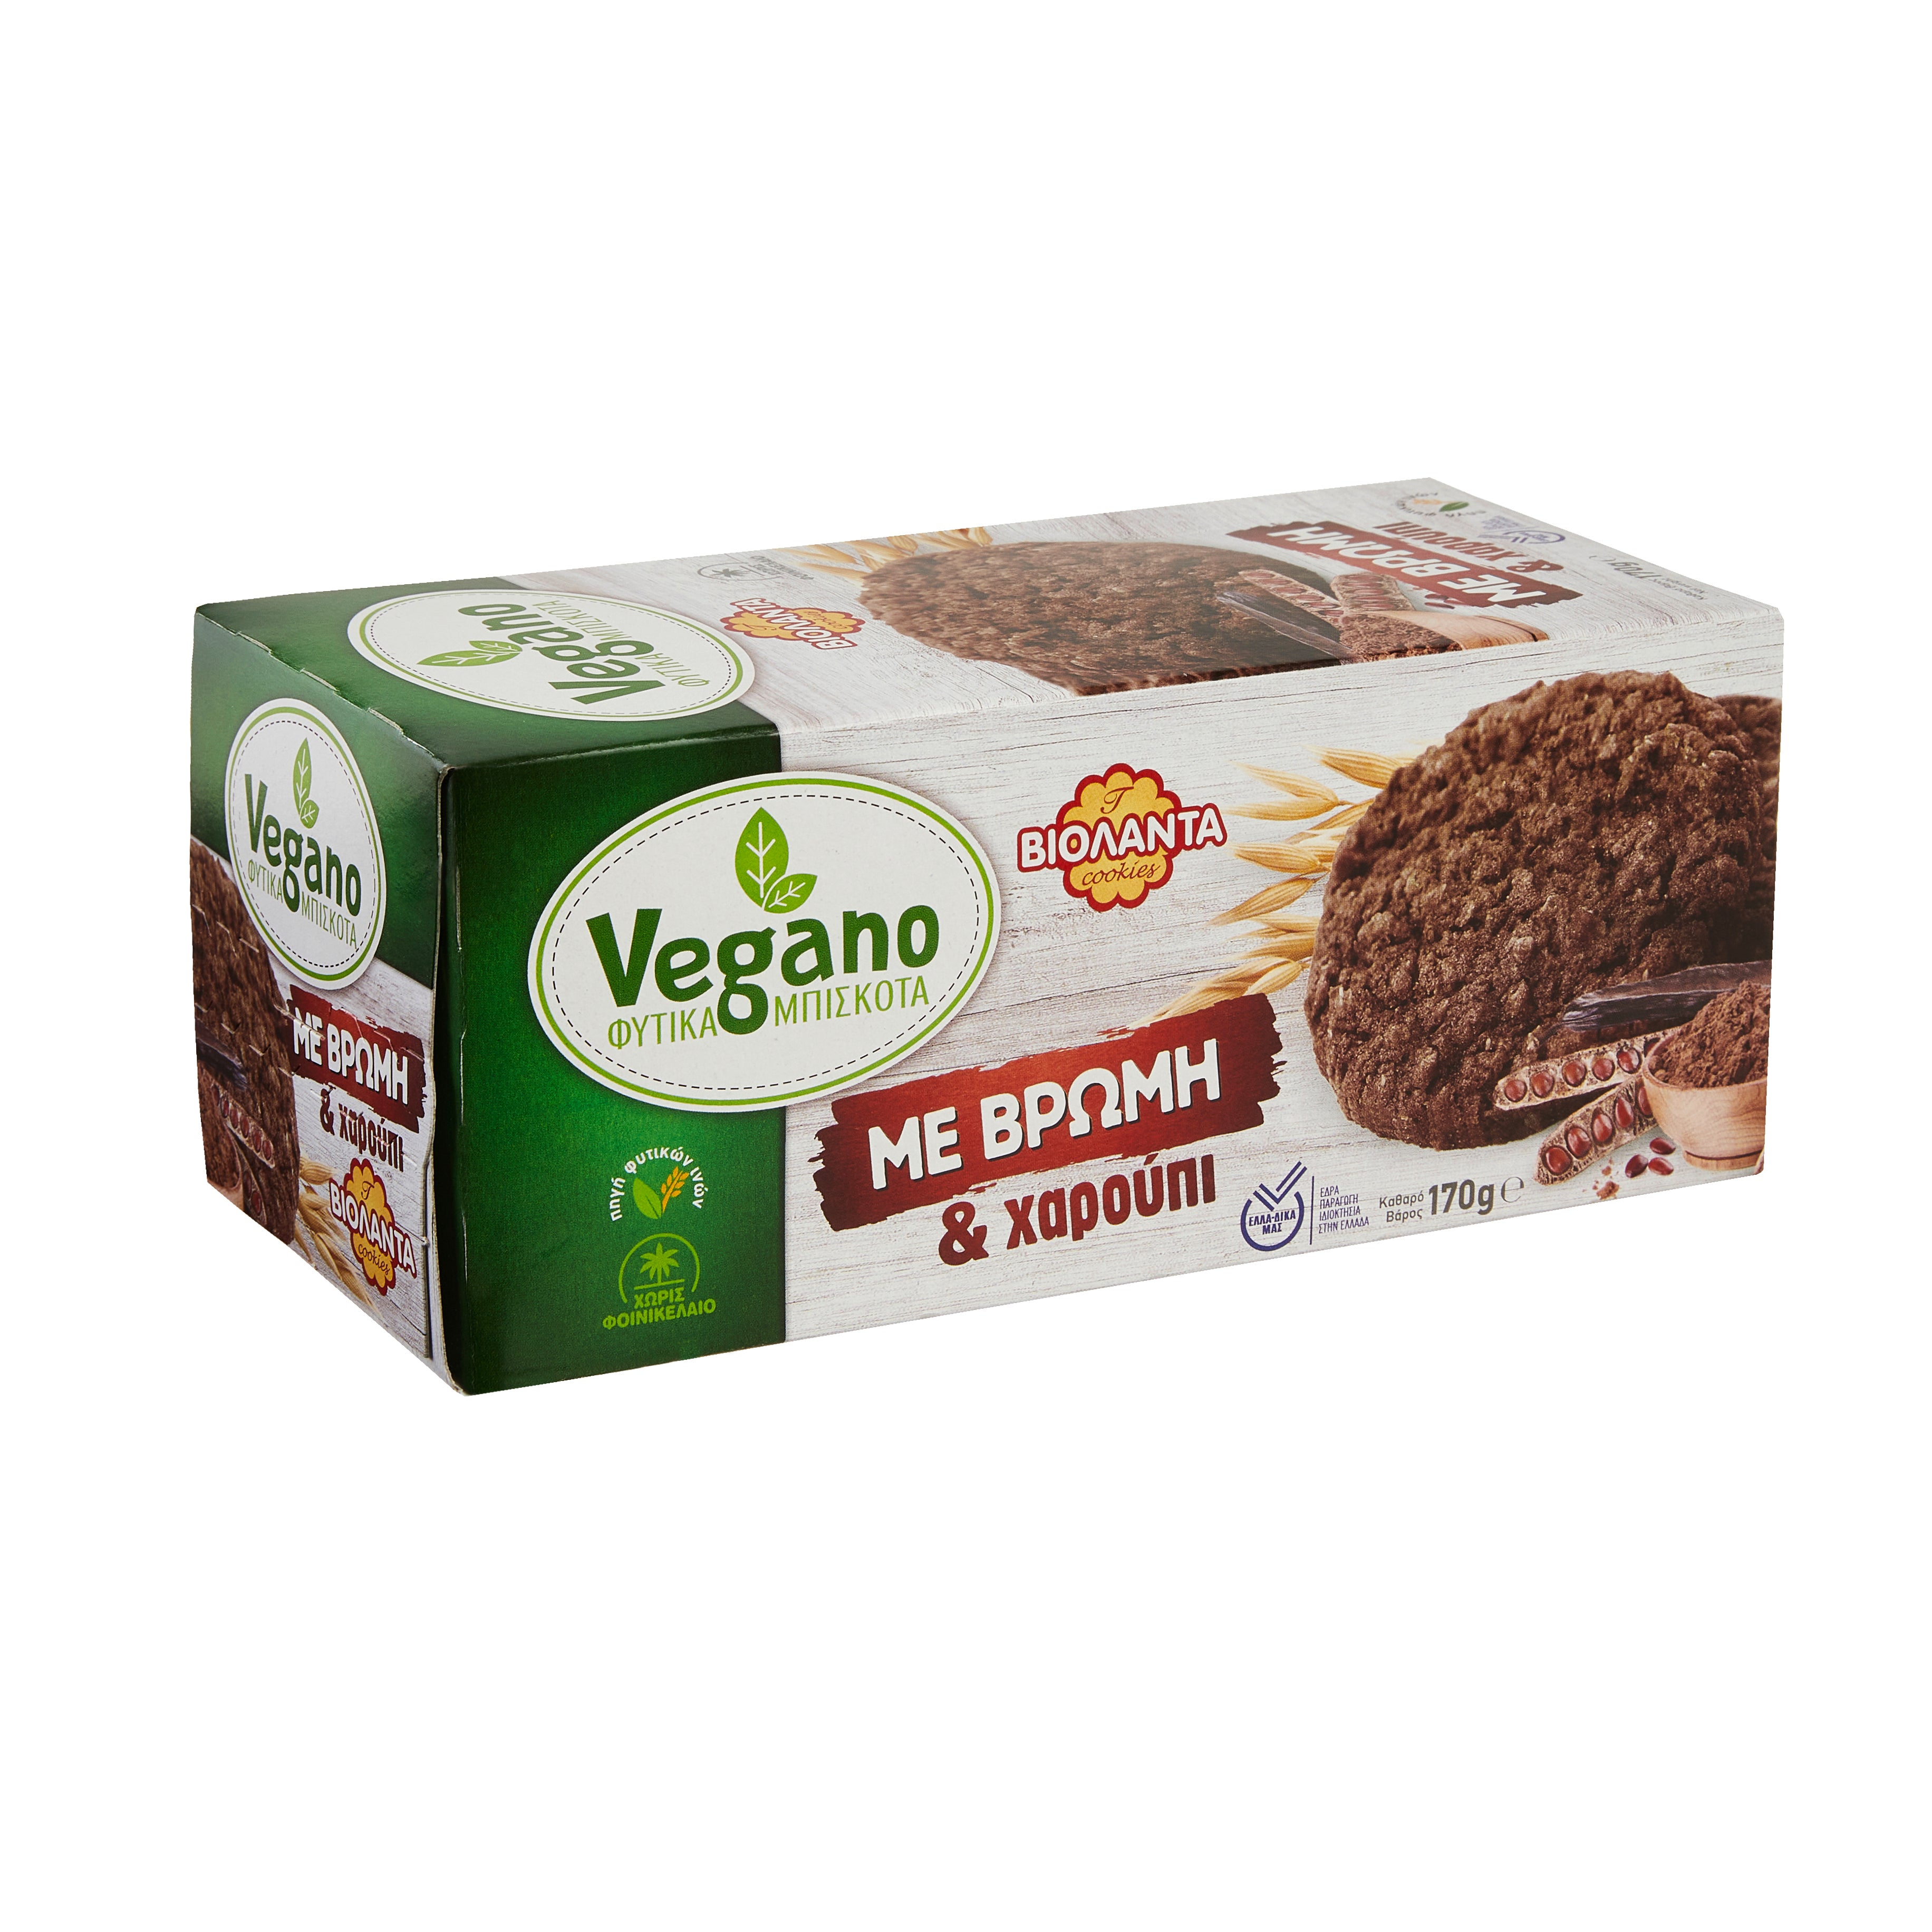 Vegano Kekse Hafer und Johannisbrot Biolanta 170 g